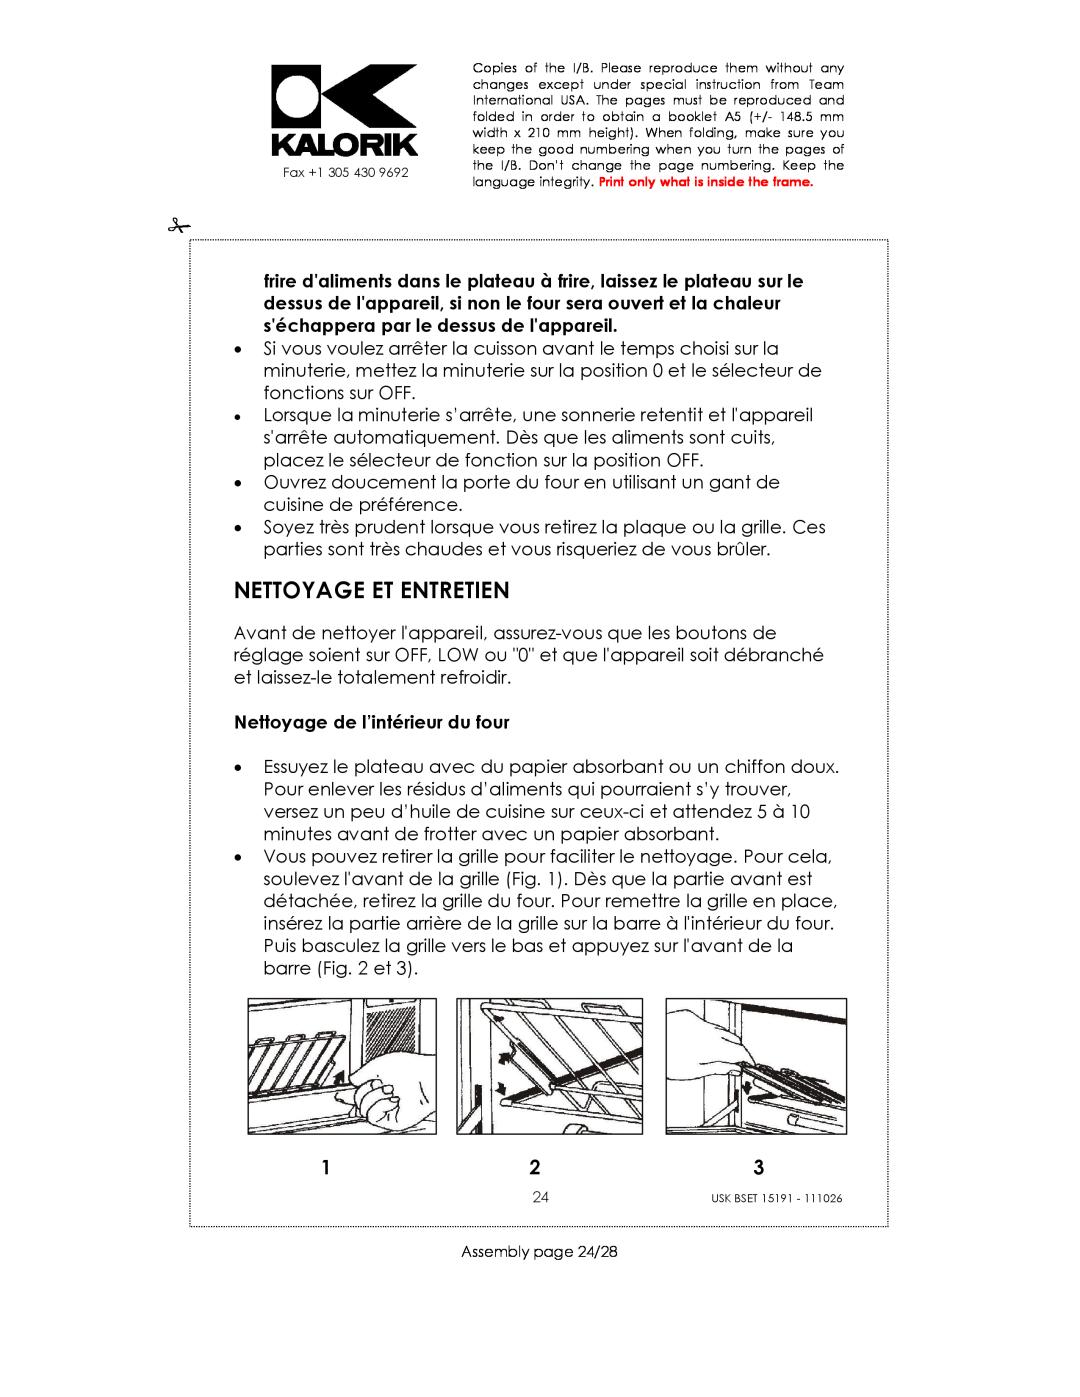 Kalorik USK BSET 15191 manual Nettoyage Et Entretien, Nettoyage de l’intérieur du four 